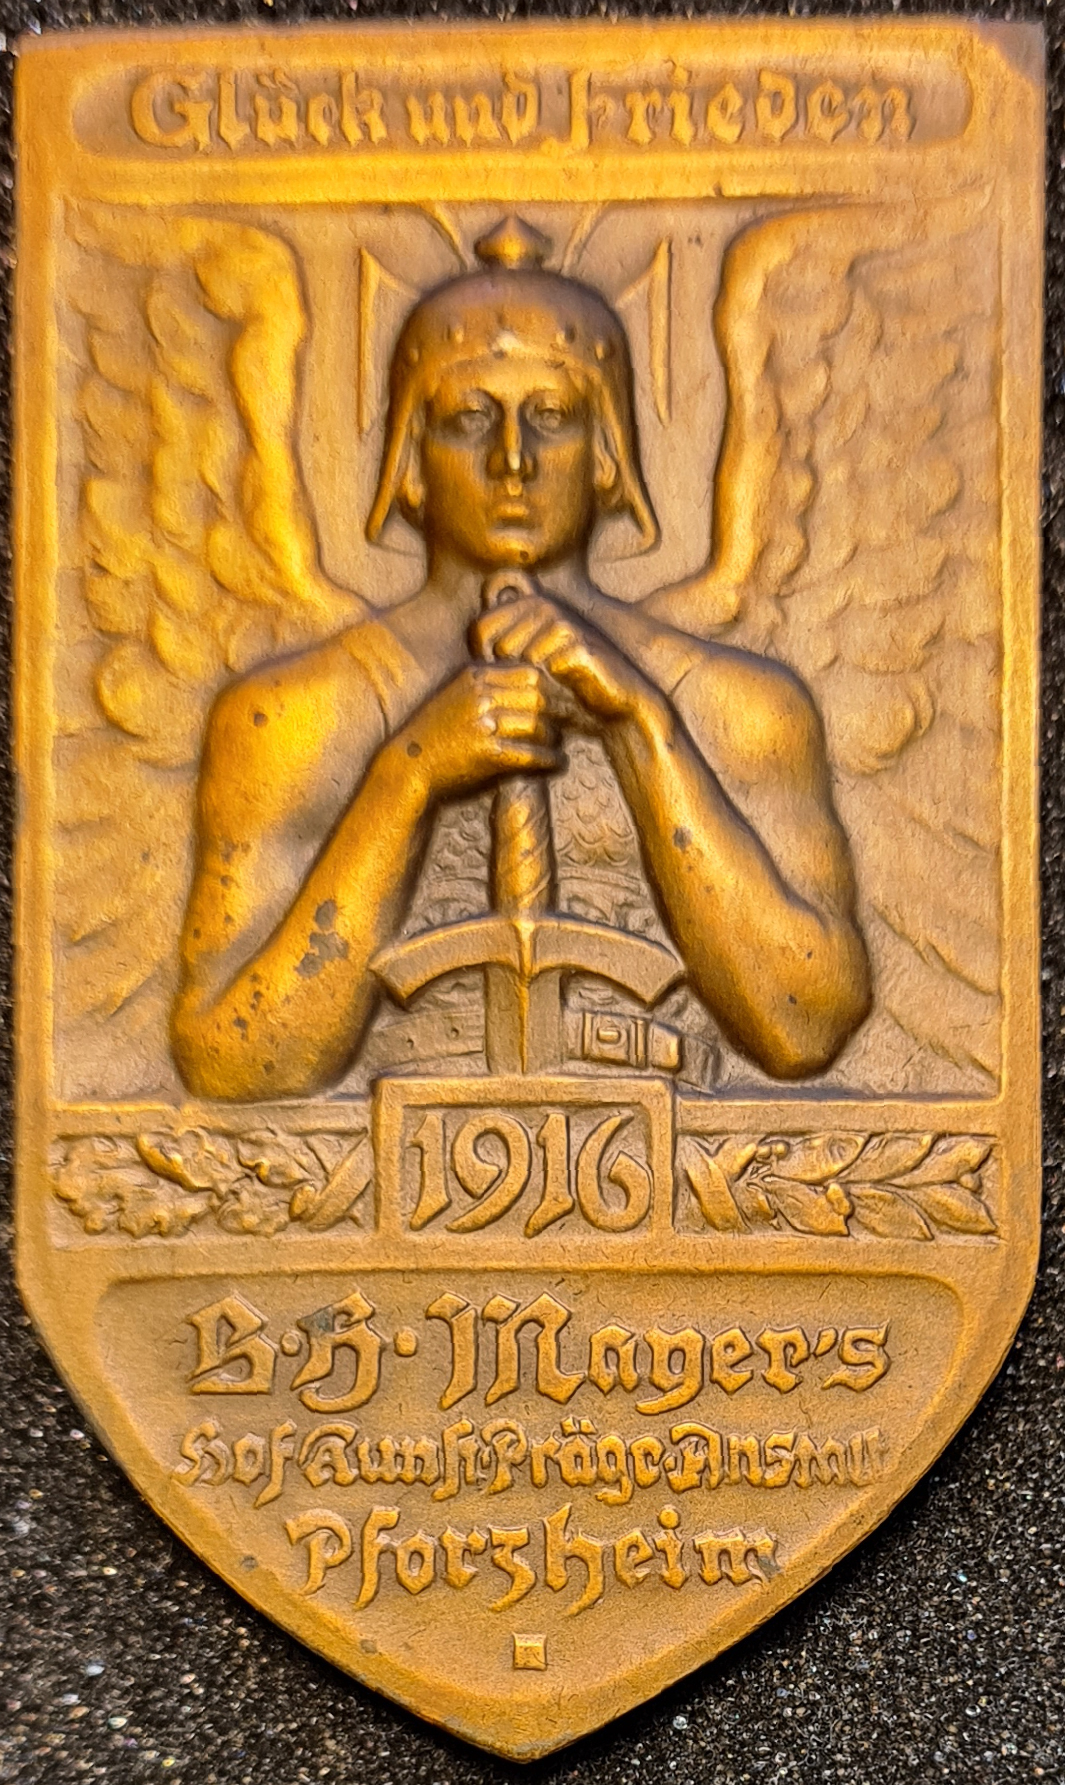 Jahresmedaille des Jahres 1916 der B. H. Mayer's Hof-Kunstprägeanstalt Pforzheim